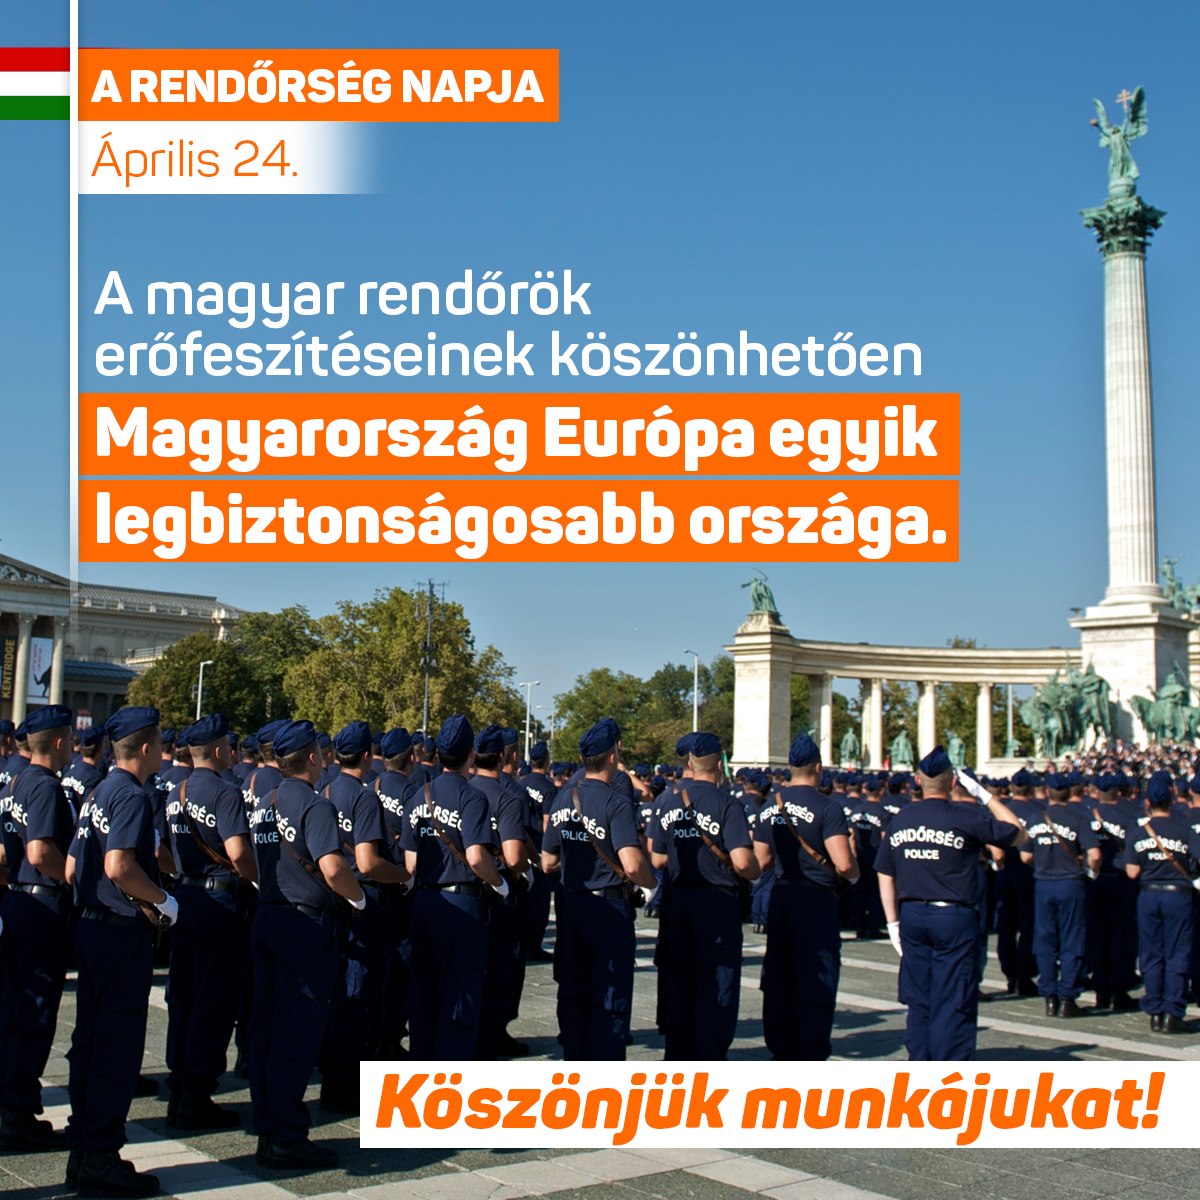 Ma van a rendőrség napja. A magyar rendőrök erőfeszítéseinek köszönhetően Magyarország Európa egyik legbiztonságosabb országa. Köszönjük munkájukat!